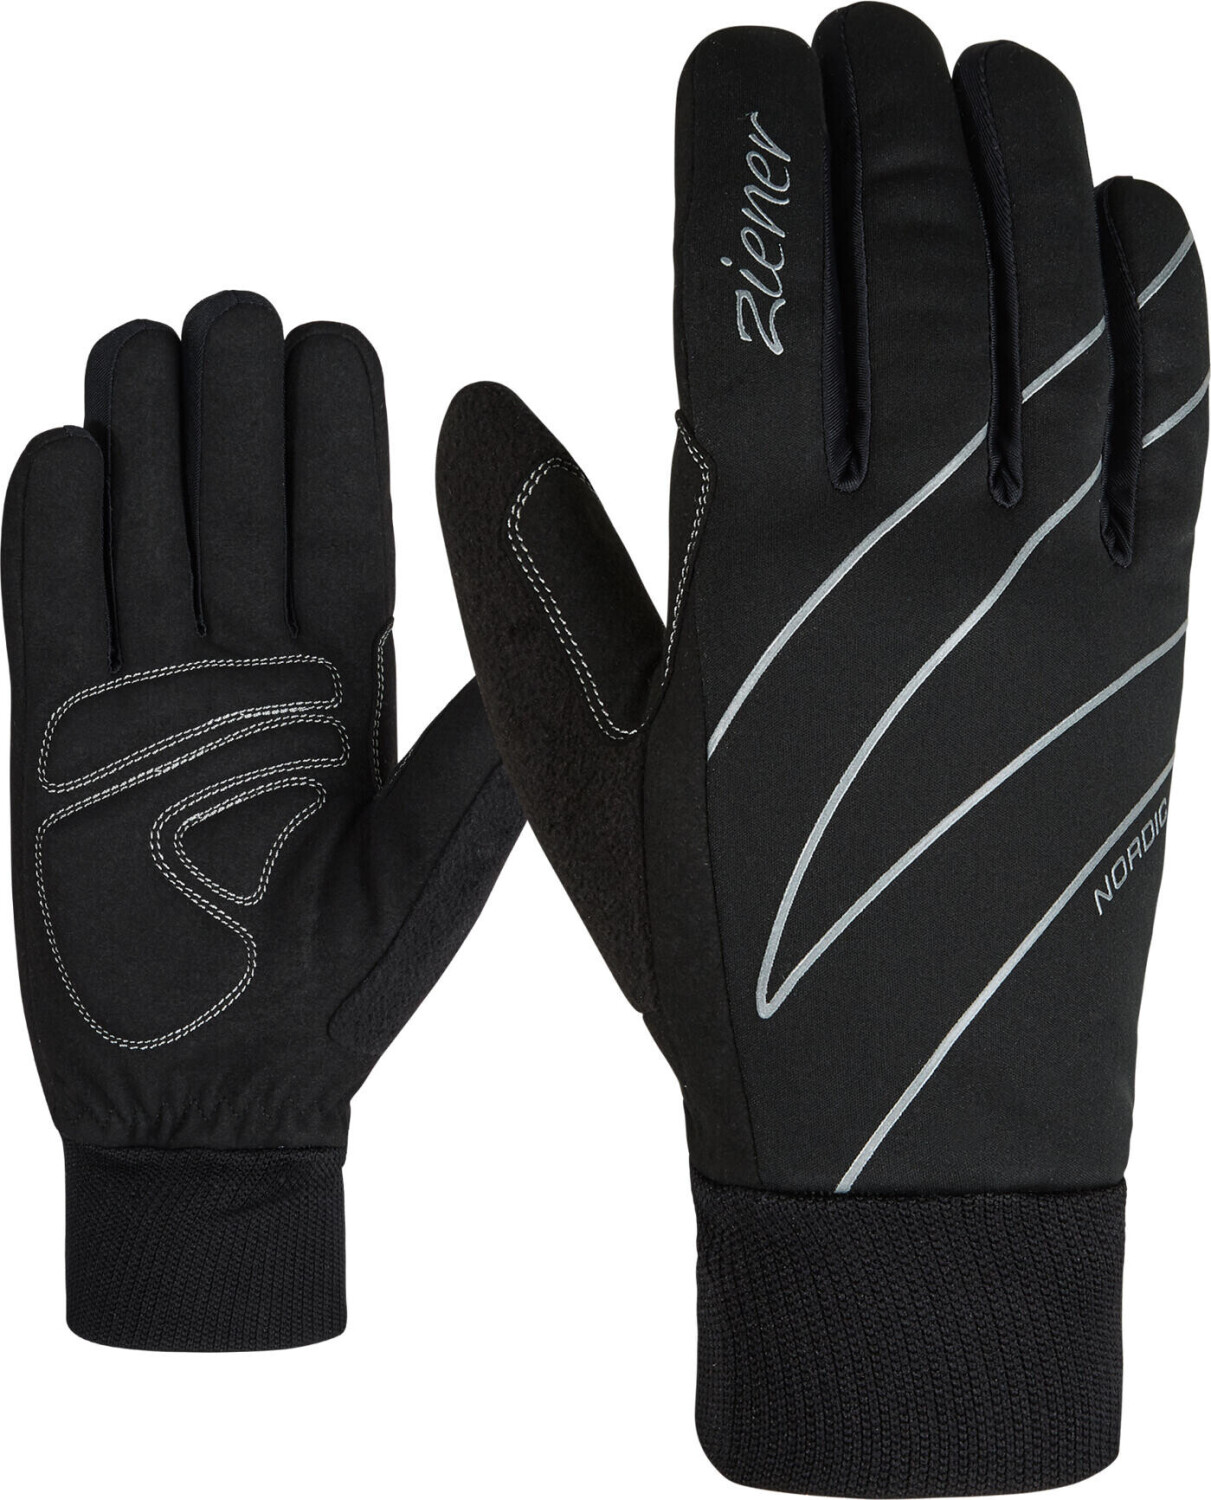 Ziener Unica Women Glove Crosscountry (808269) black ab 28,15 € |  Preisvergleich bei